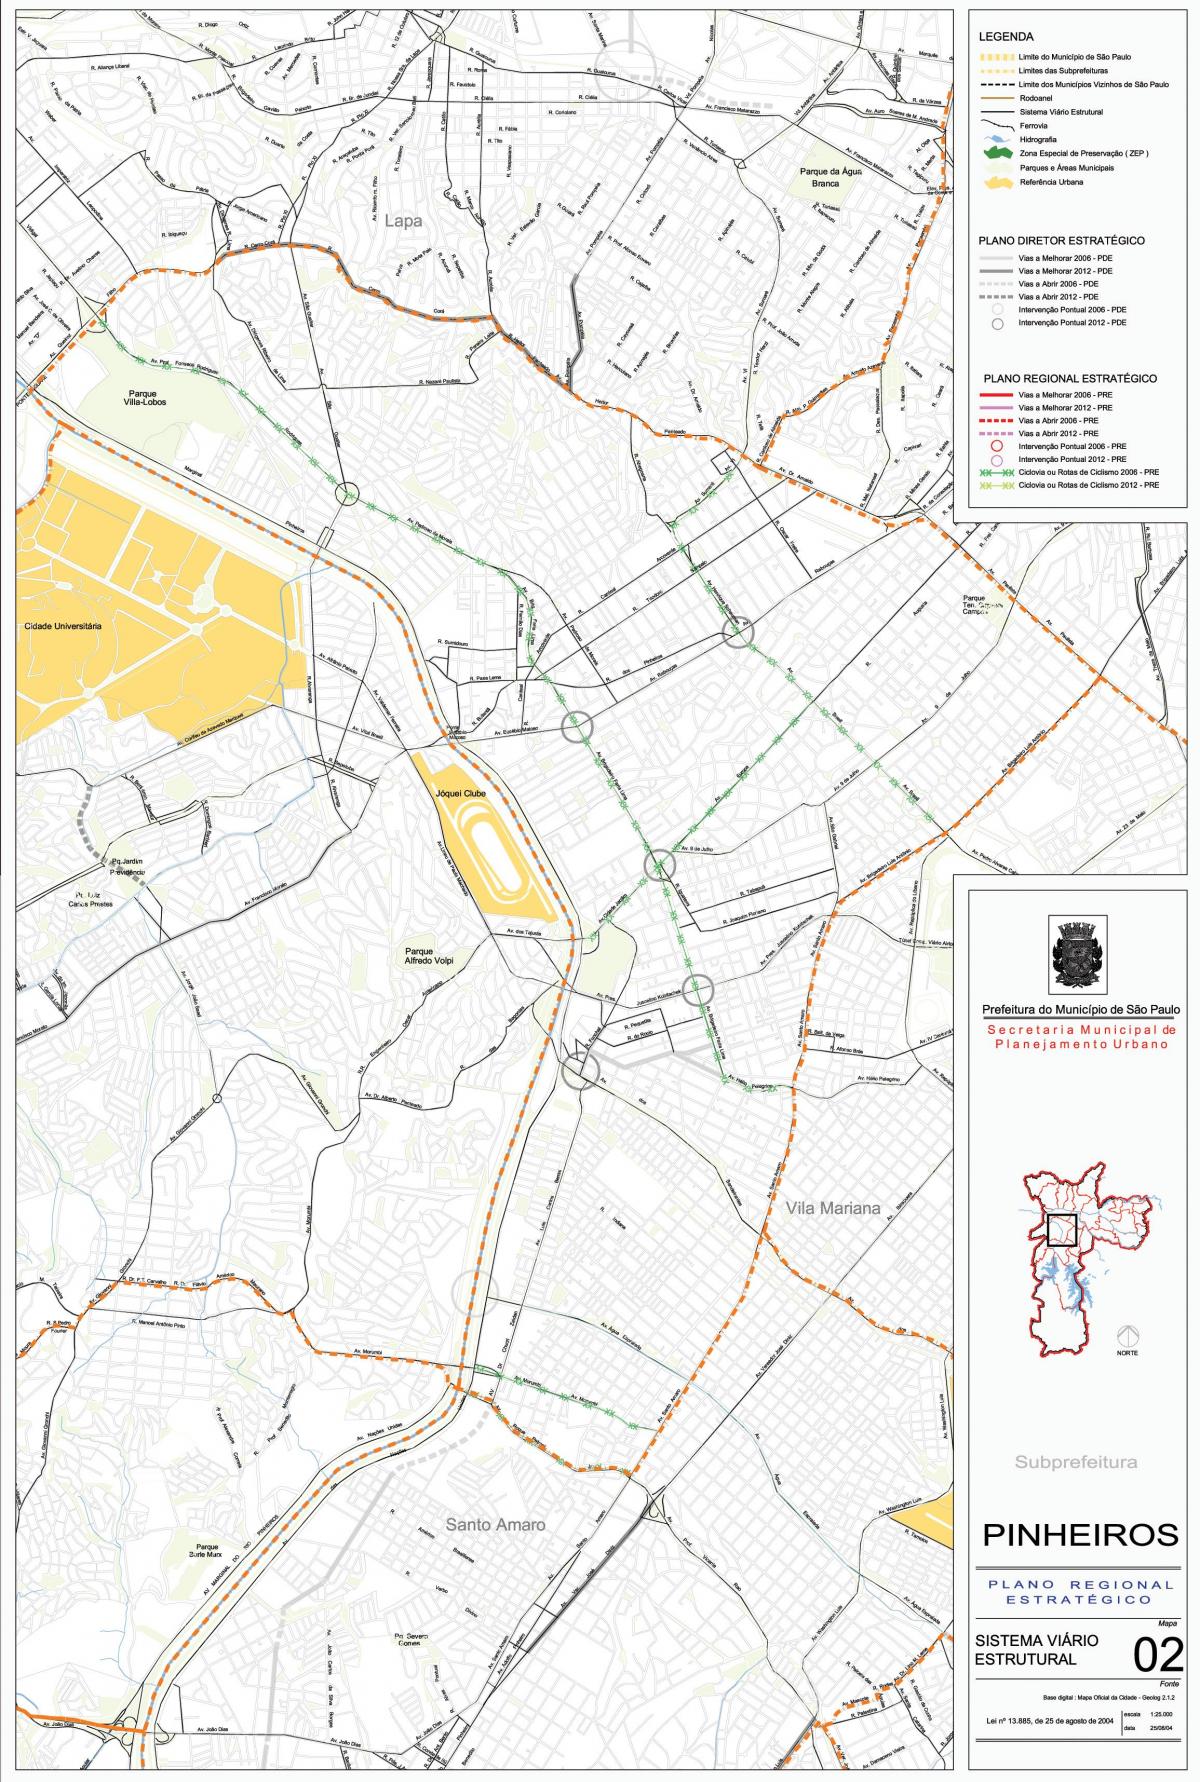 Քարտեզ Пинхейрос քաղաքի Սան - ճանապարհների